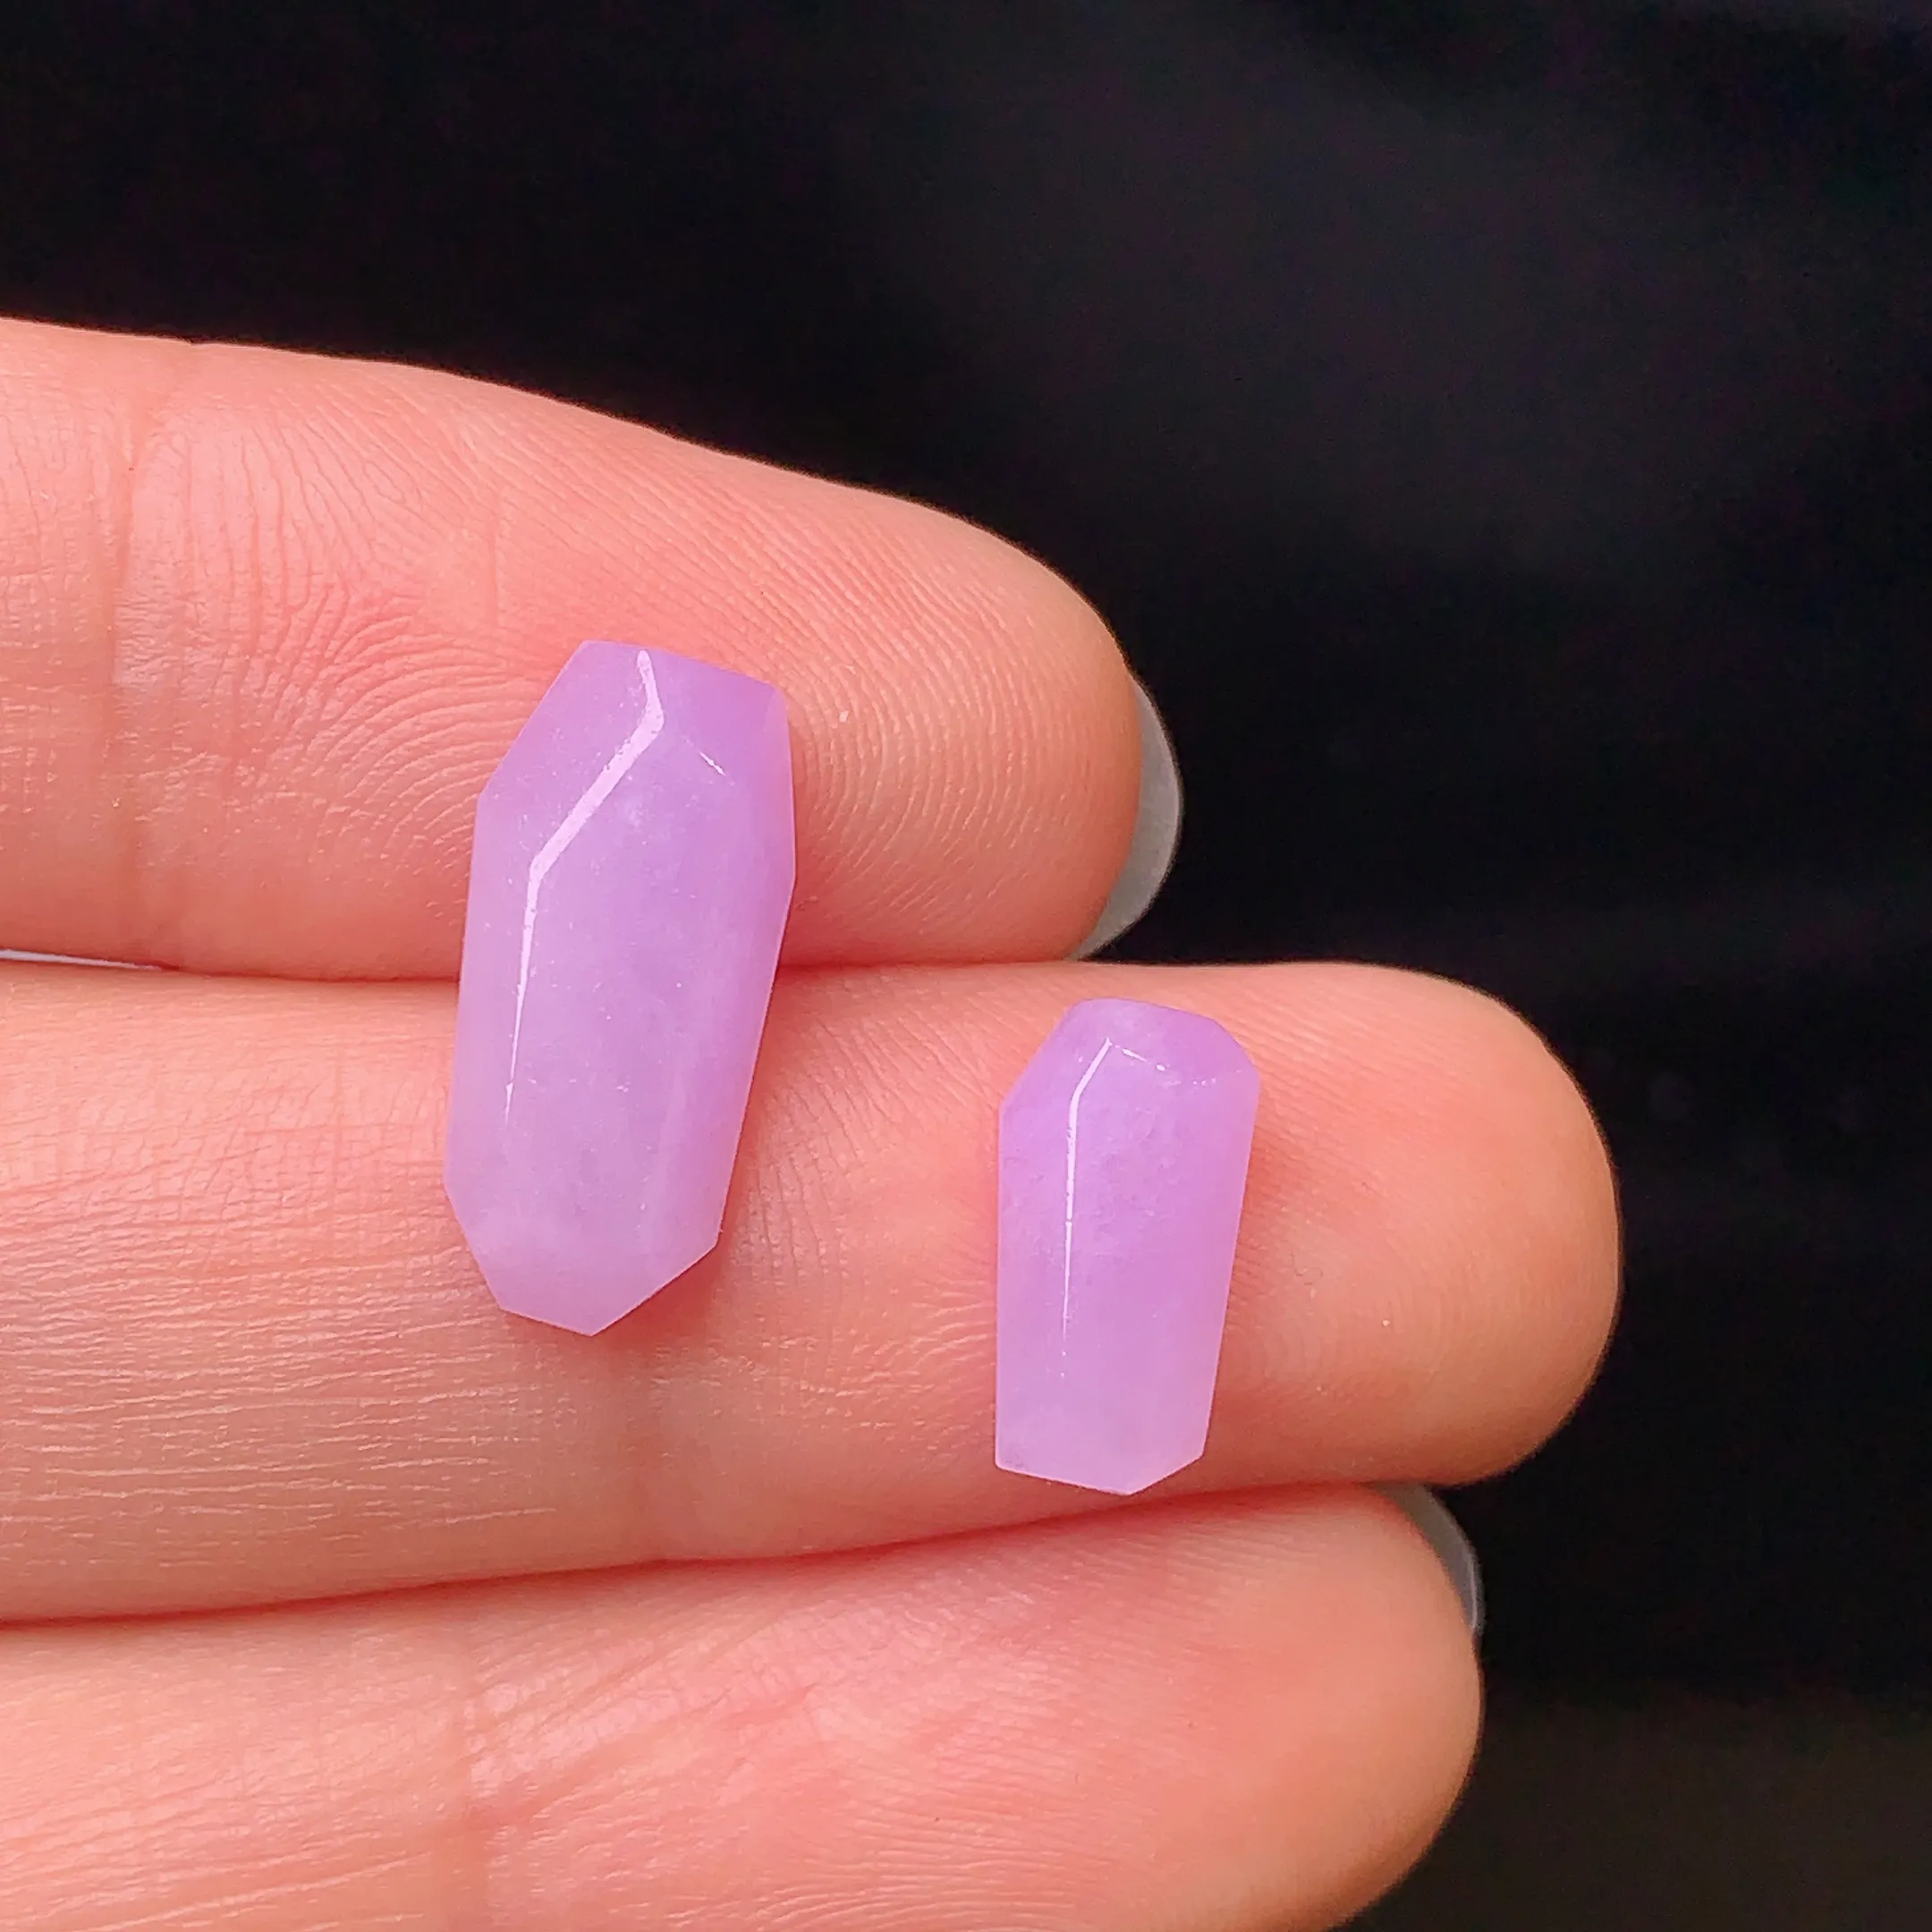 镶嵌款 紫罗兰菱形一对 玉质细腻 水润透亮 色泽艳丽 整体尺寸14.8*7.1*3.5